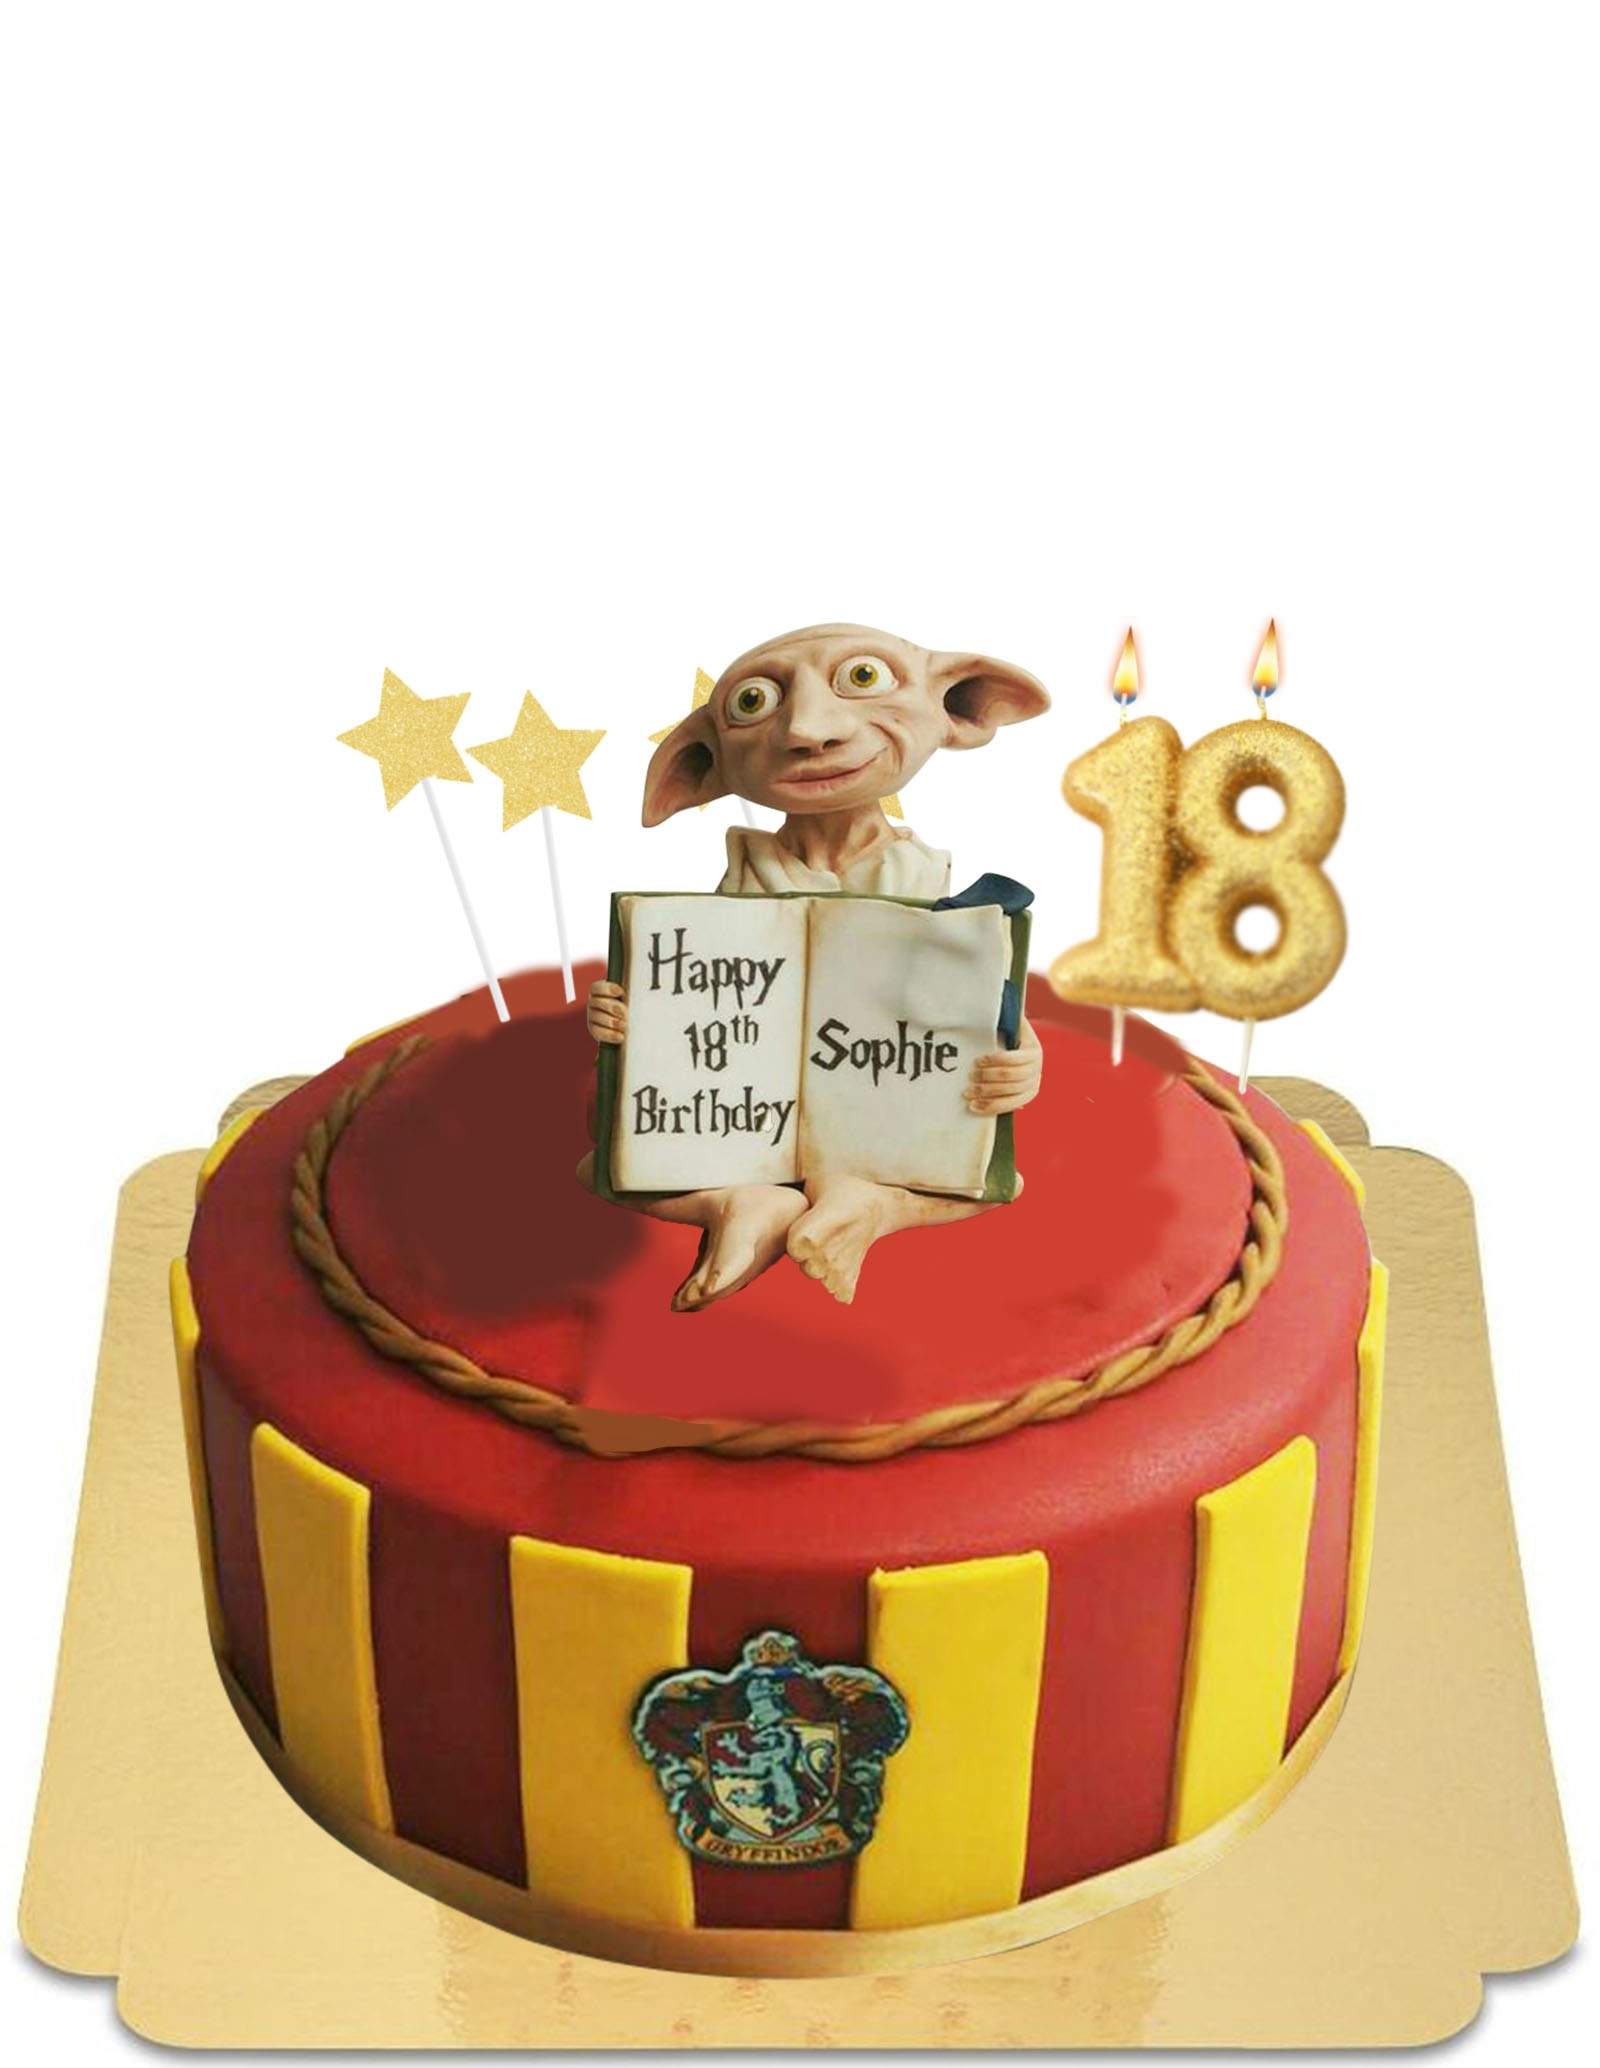 Gâteau Harry Potter - Les Hobbies d'Aurélie